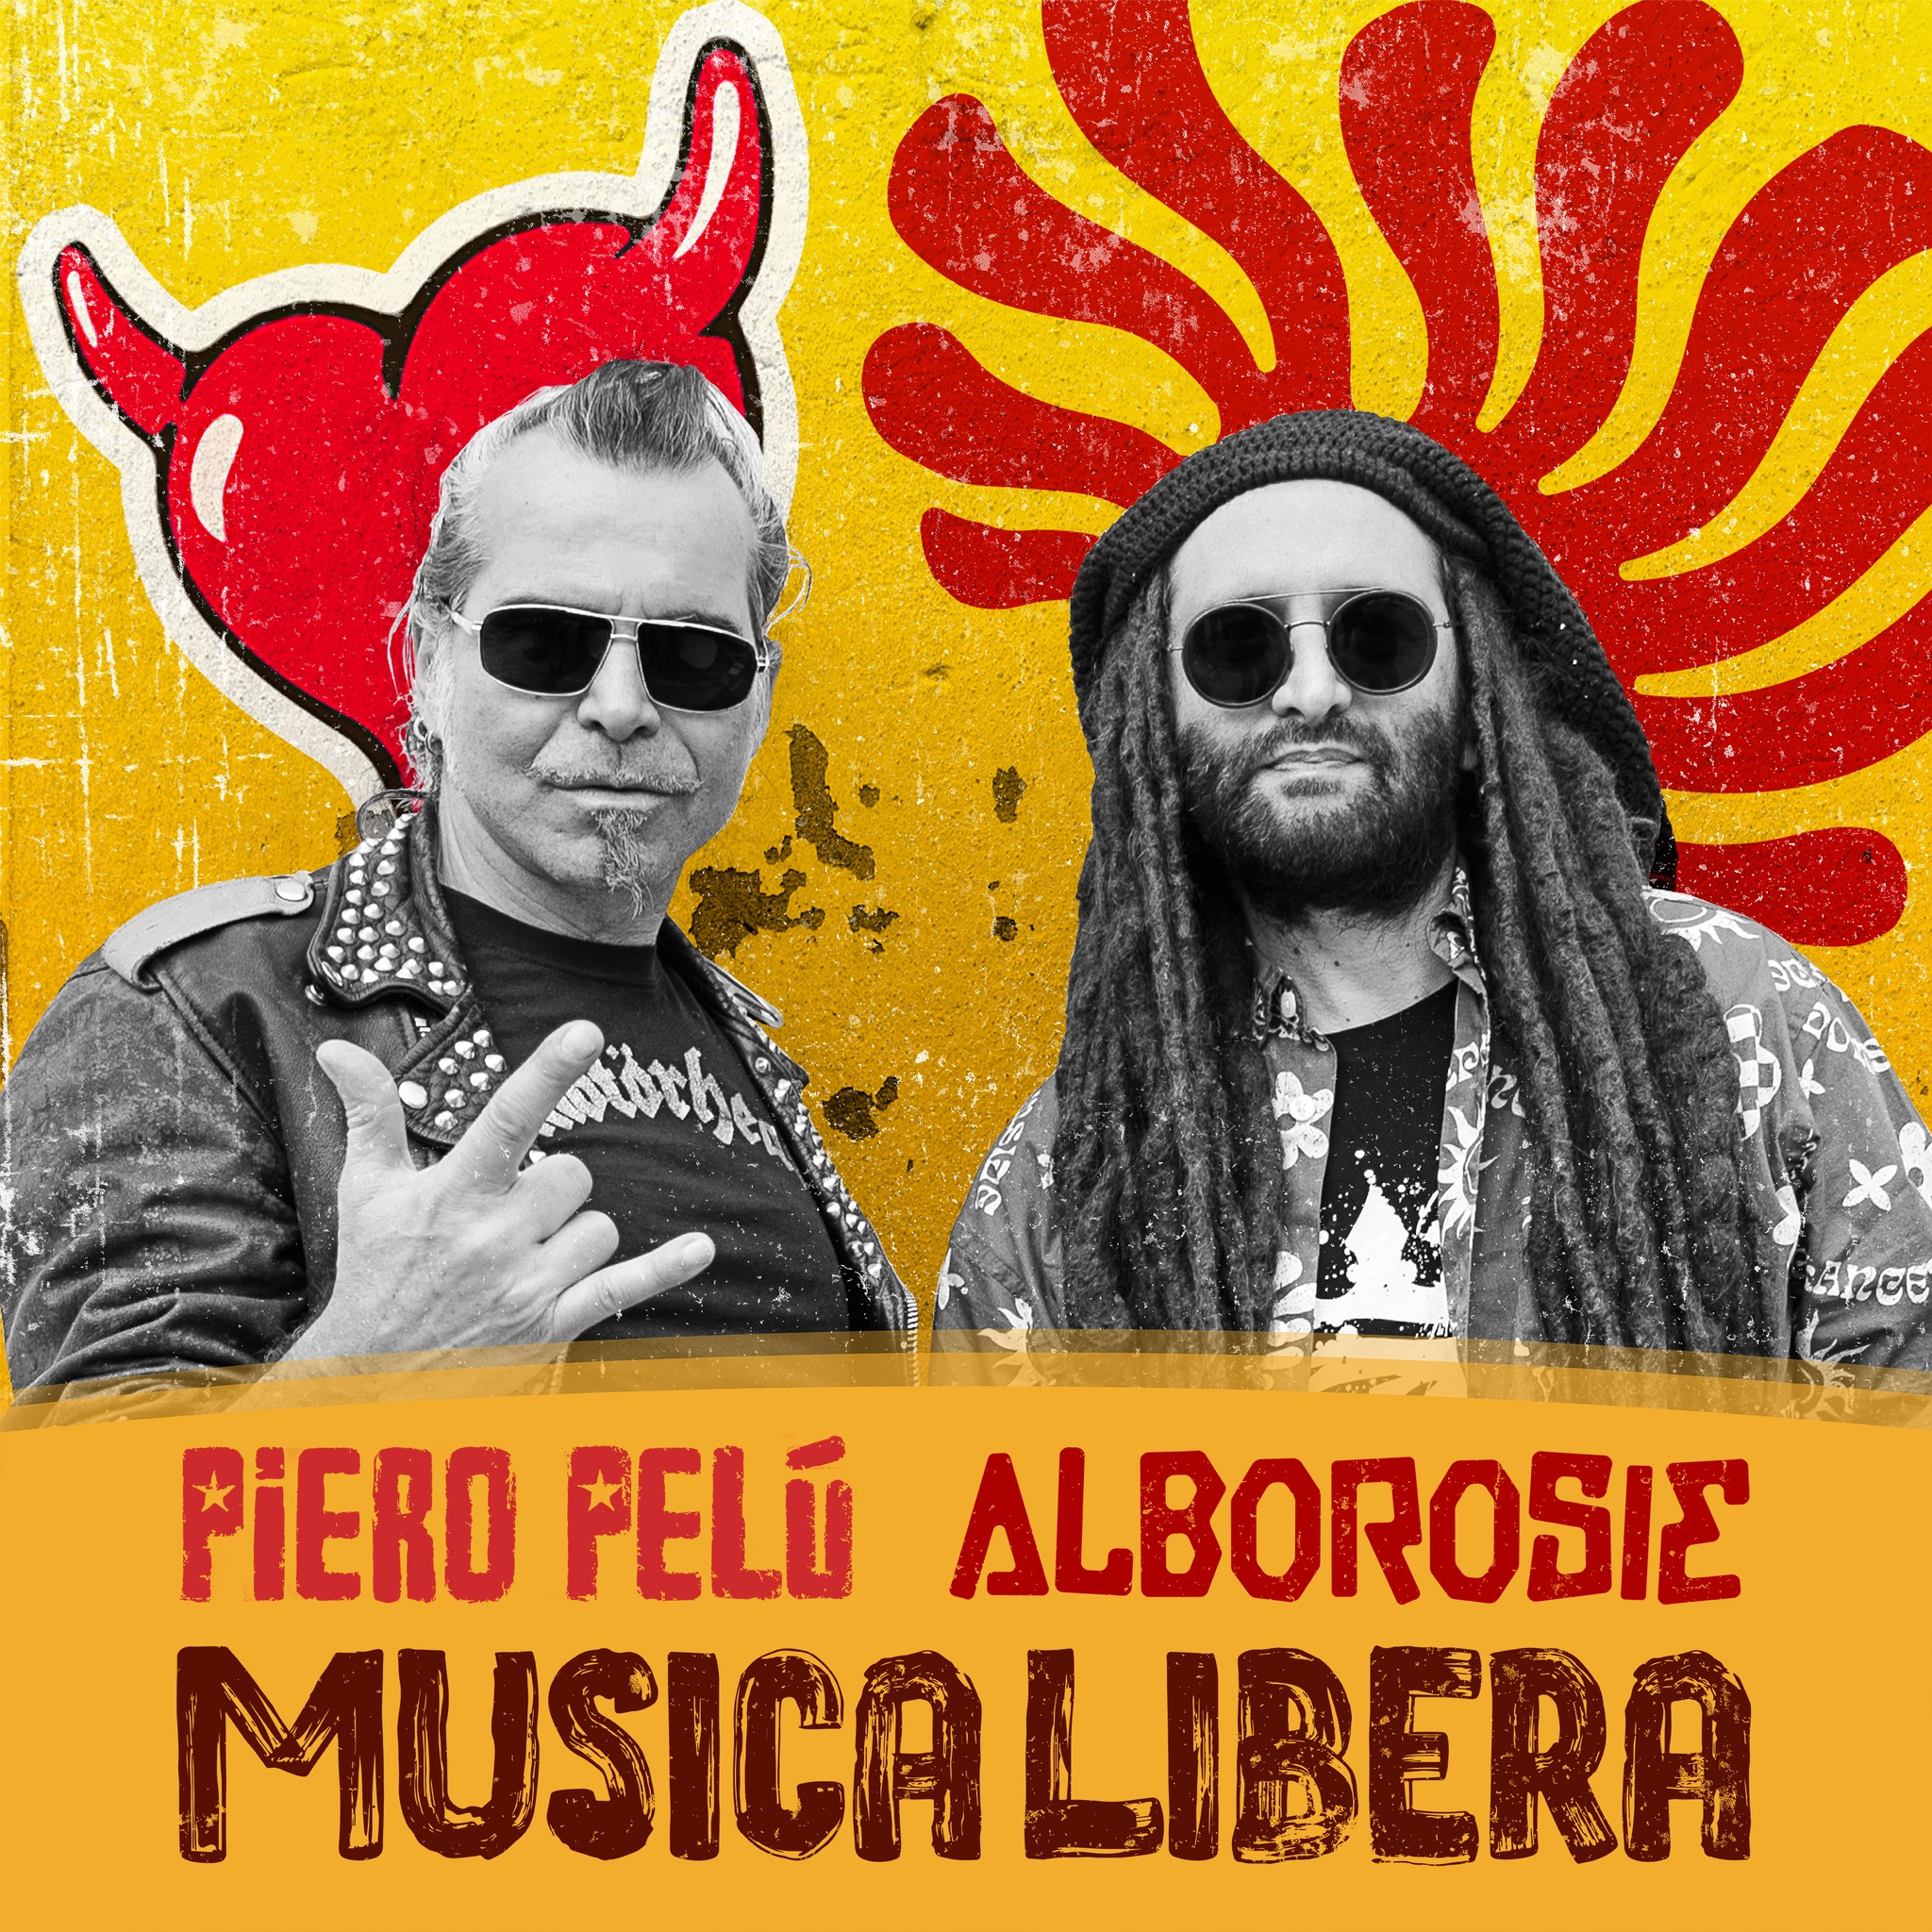 Musica libera - Piero Pelù - Alborosie - litfibaunofficial.it